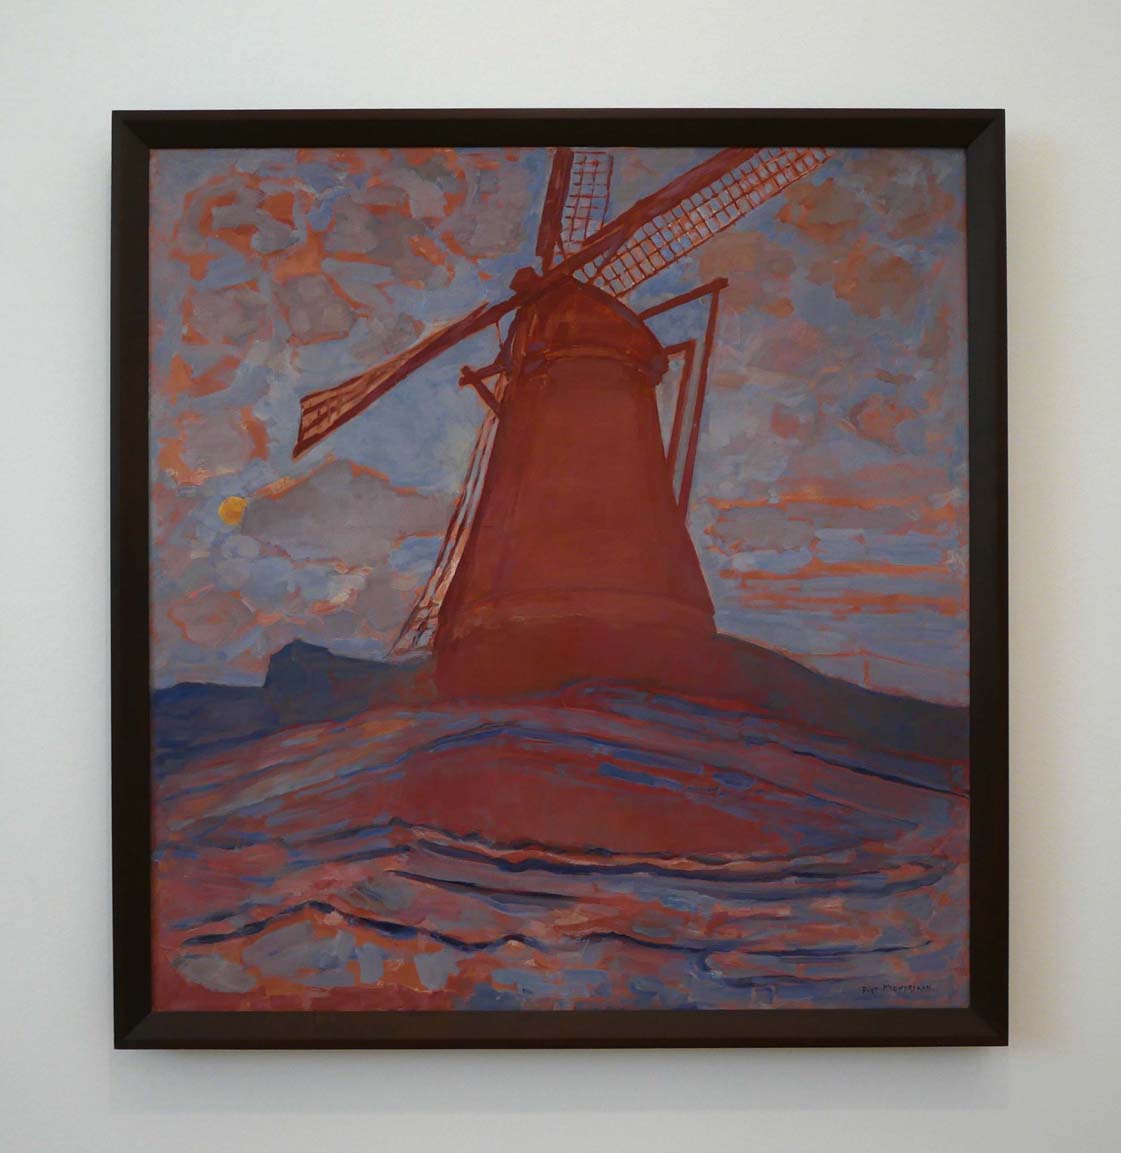 Piet Mondrian, Windmill, 1917